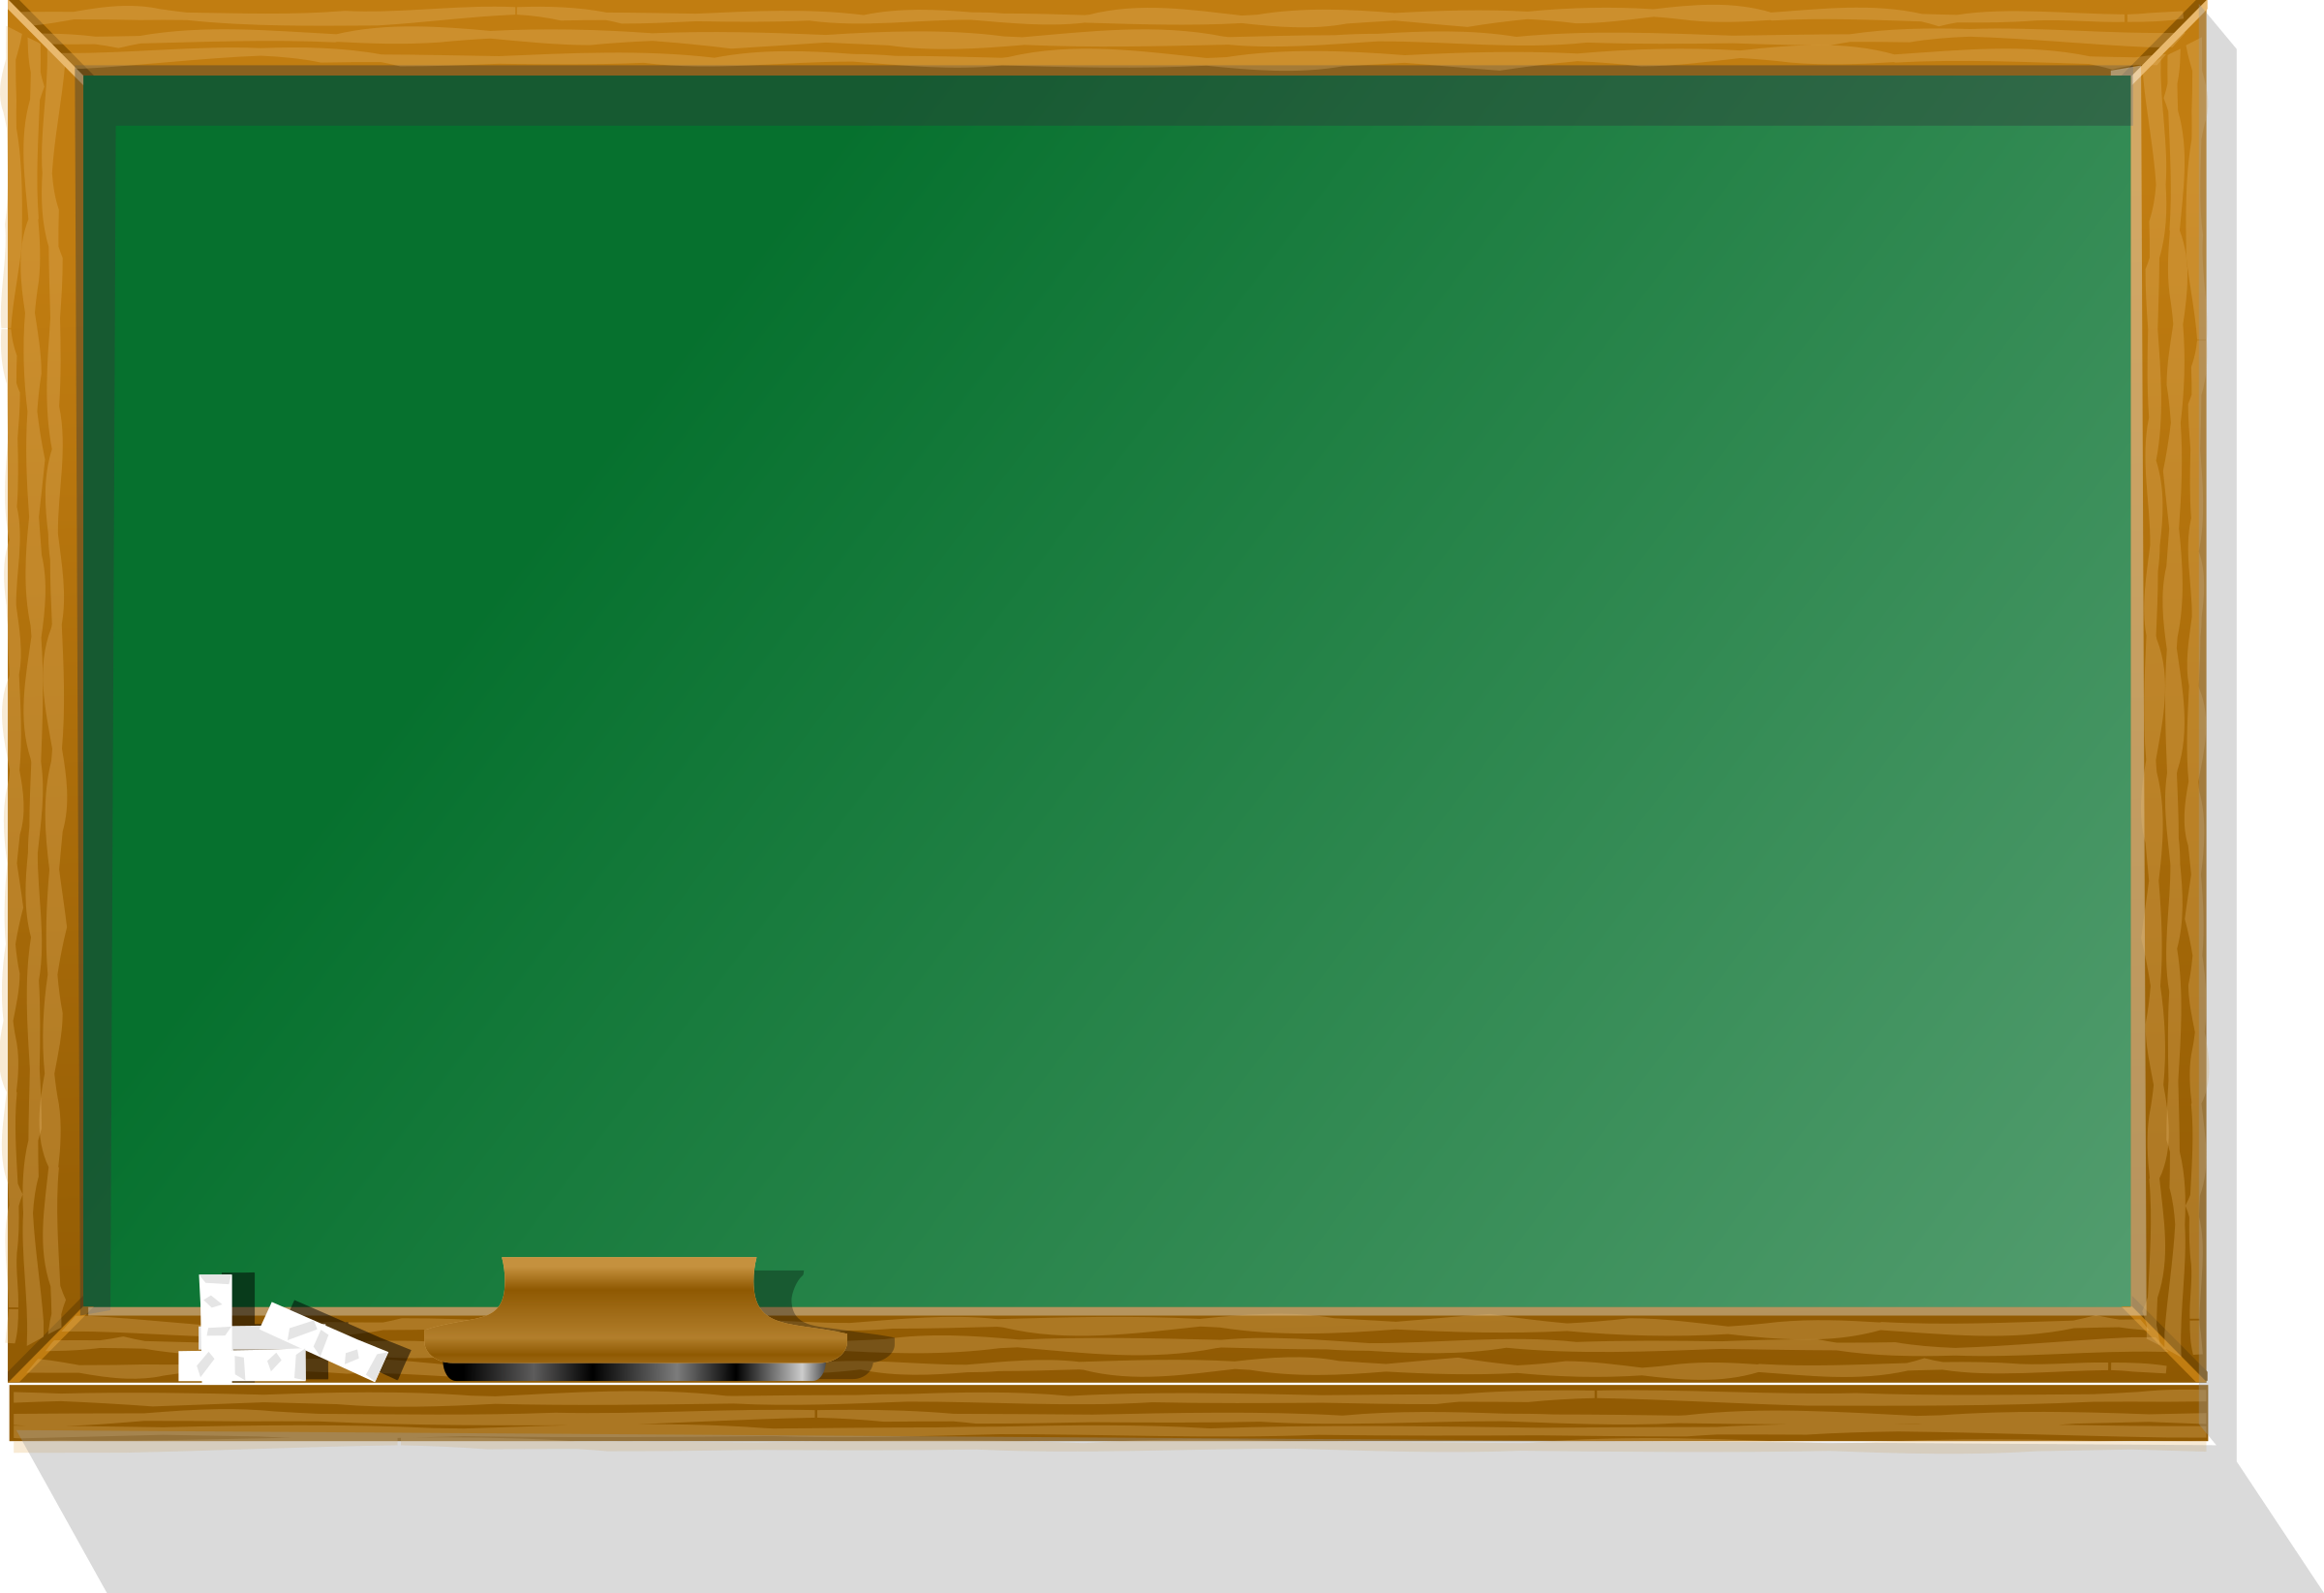 Clipart - blackboard